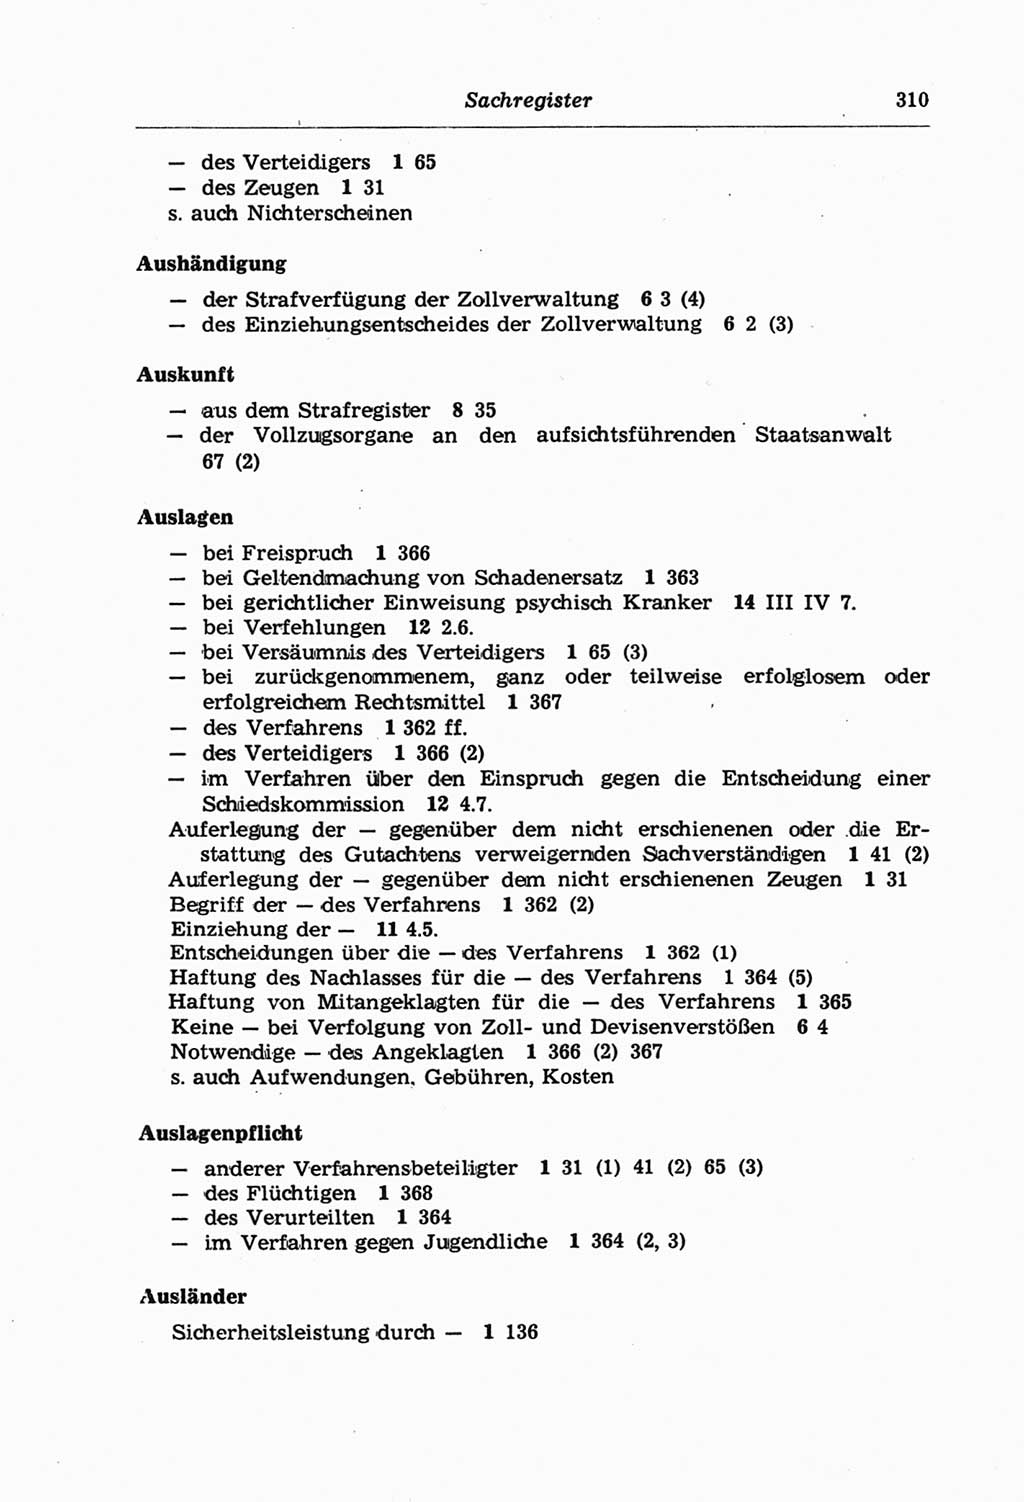 Strafprozeßordnung (StPO) der Deutschen Demokratischen Republik (DDR) und angrenzende Gesetze und Bestimmungen 1968, Seite 310 (StPO Ges. Bstgn. DDR 1968, S. 310)